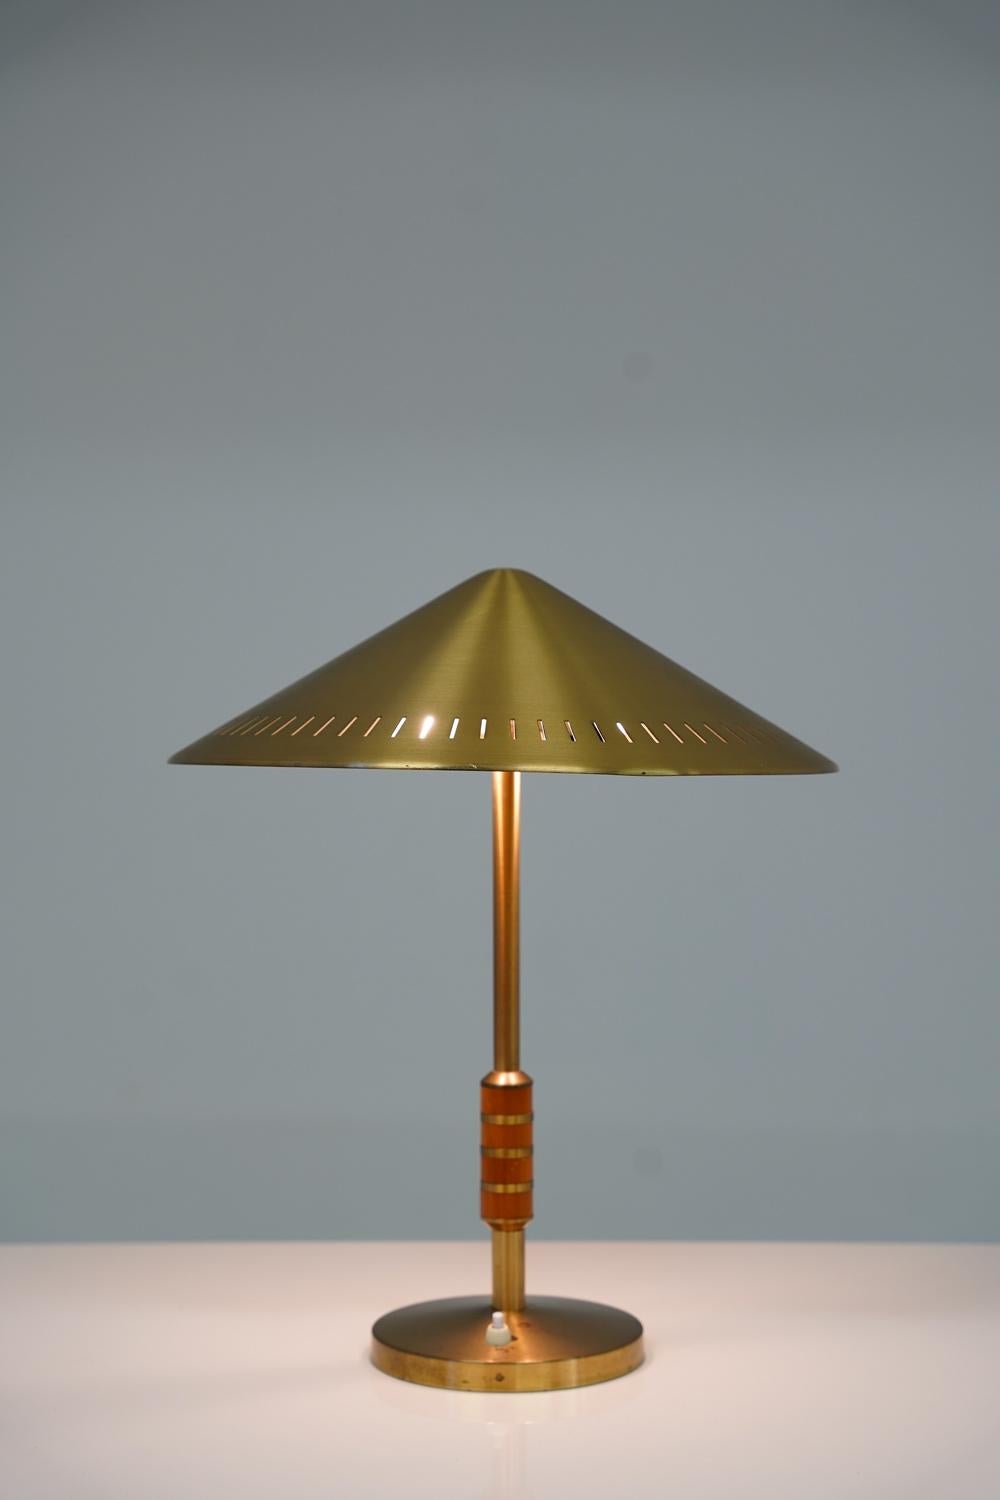 Seltene Tischlampe Modell 8403 von Boréns, Schweden. 
Diese Lampe ist aus massivem Messing mit Details aus Teakholz gefertigt und verfügt über einen schönen perforierten Lampenschirm. 

Zustand: Sehr guter Originalzustand mit ein paar Flecken auf